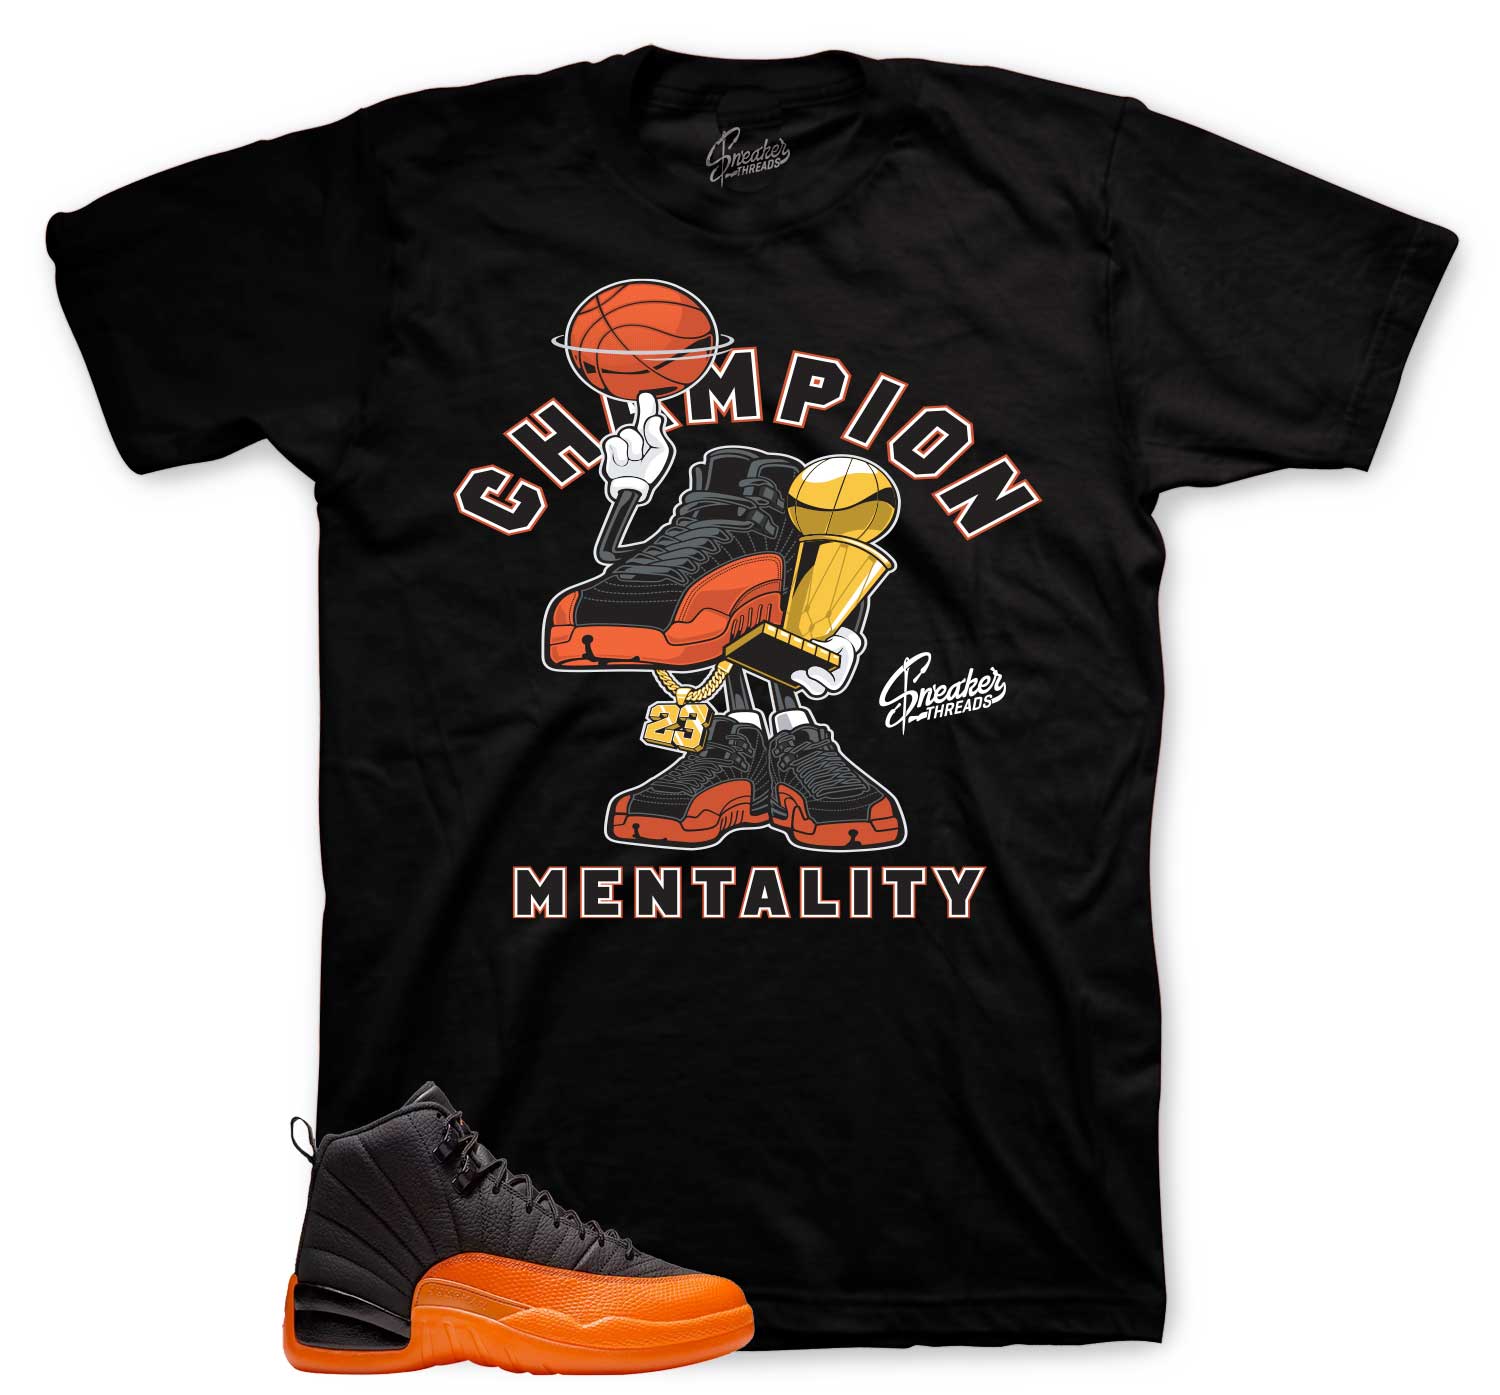 Retro 12 Brilliant Orange Shirt - Champ Mentality - Black